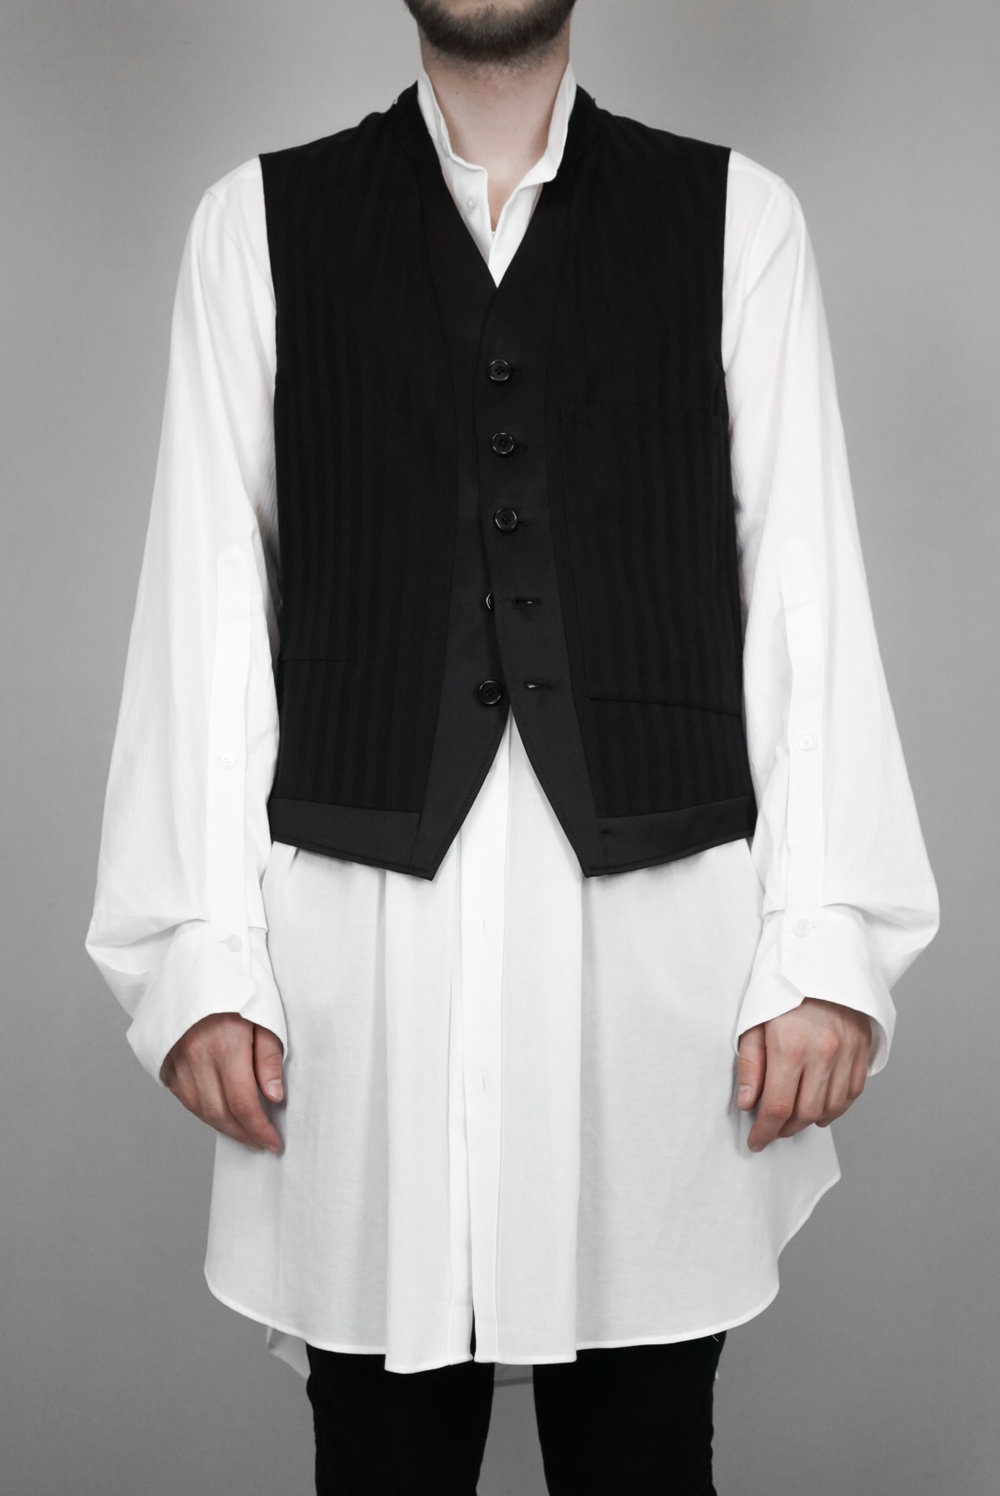 Ann Demeulemeester – Mens – Waistcoat – Black – Striped – Cotton / Viscose – Button Detail